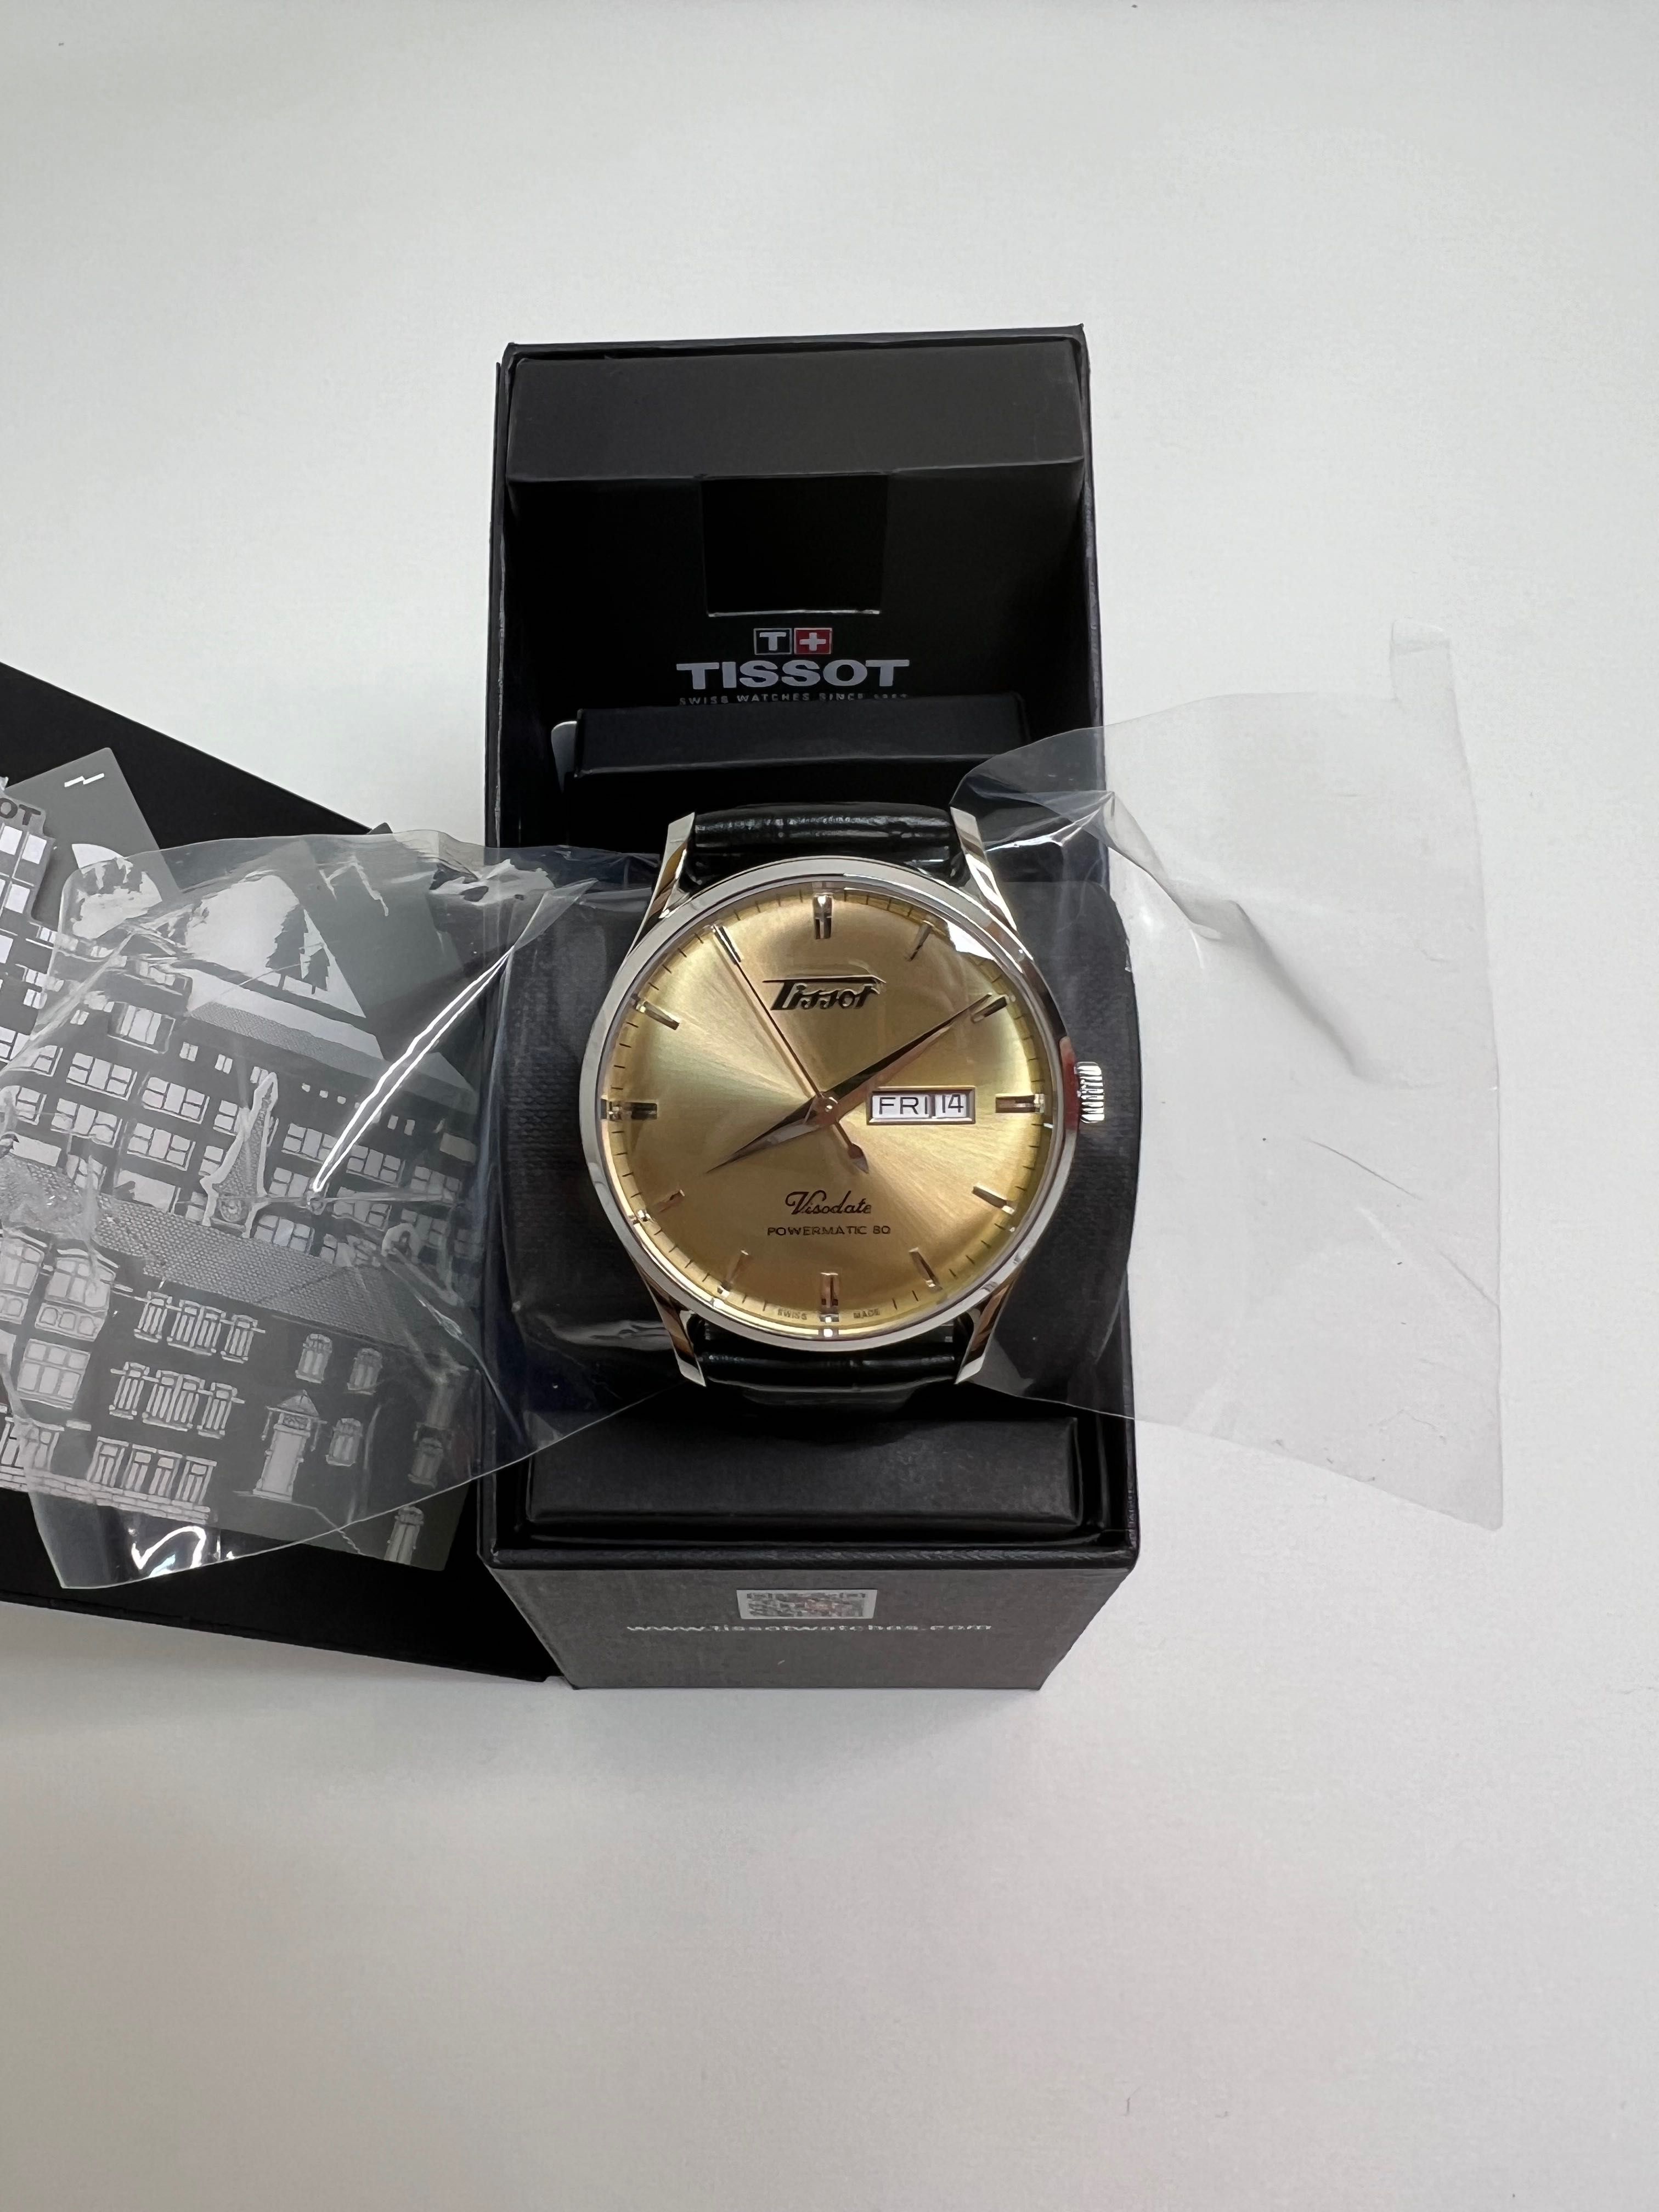 Оригинальные Tissot Heritage новые механические часы Швейцария